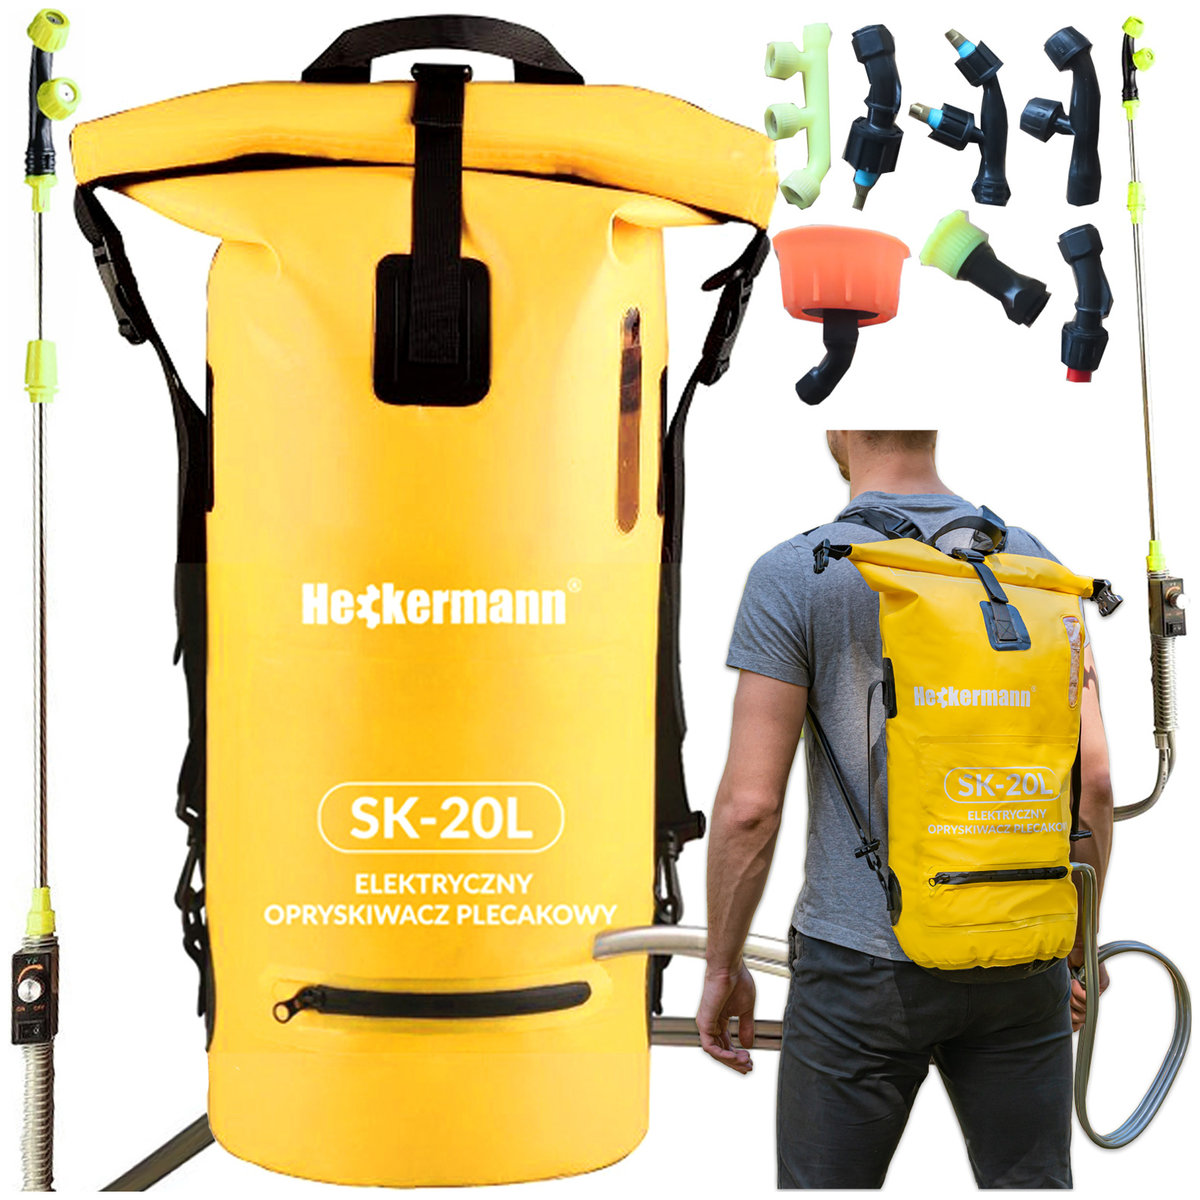 Opryskiwacz elektryczny plecakowy Heckermann SK-20L